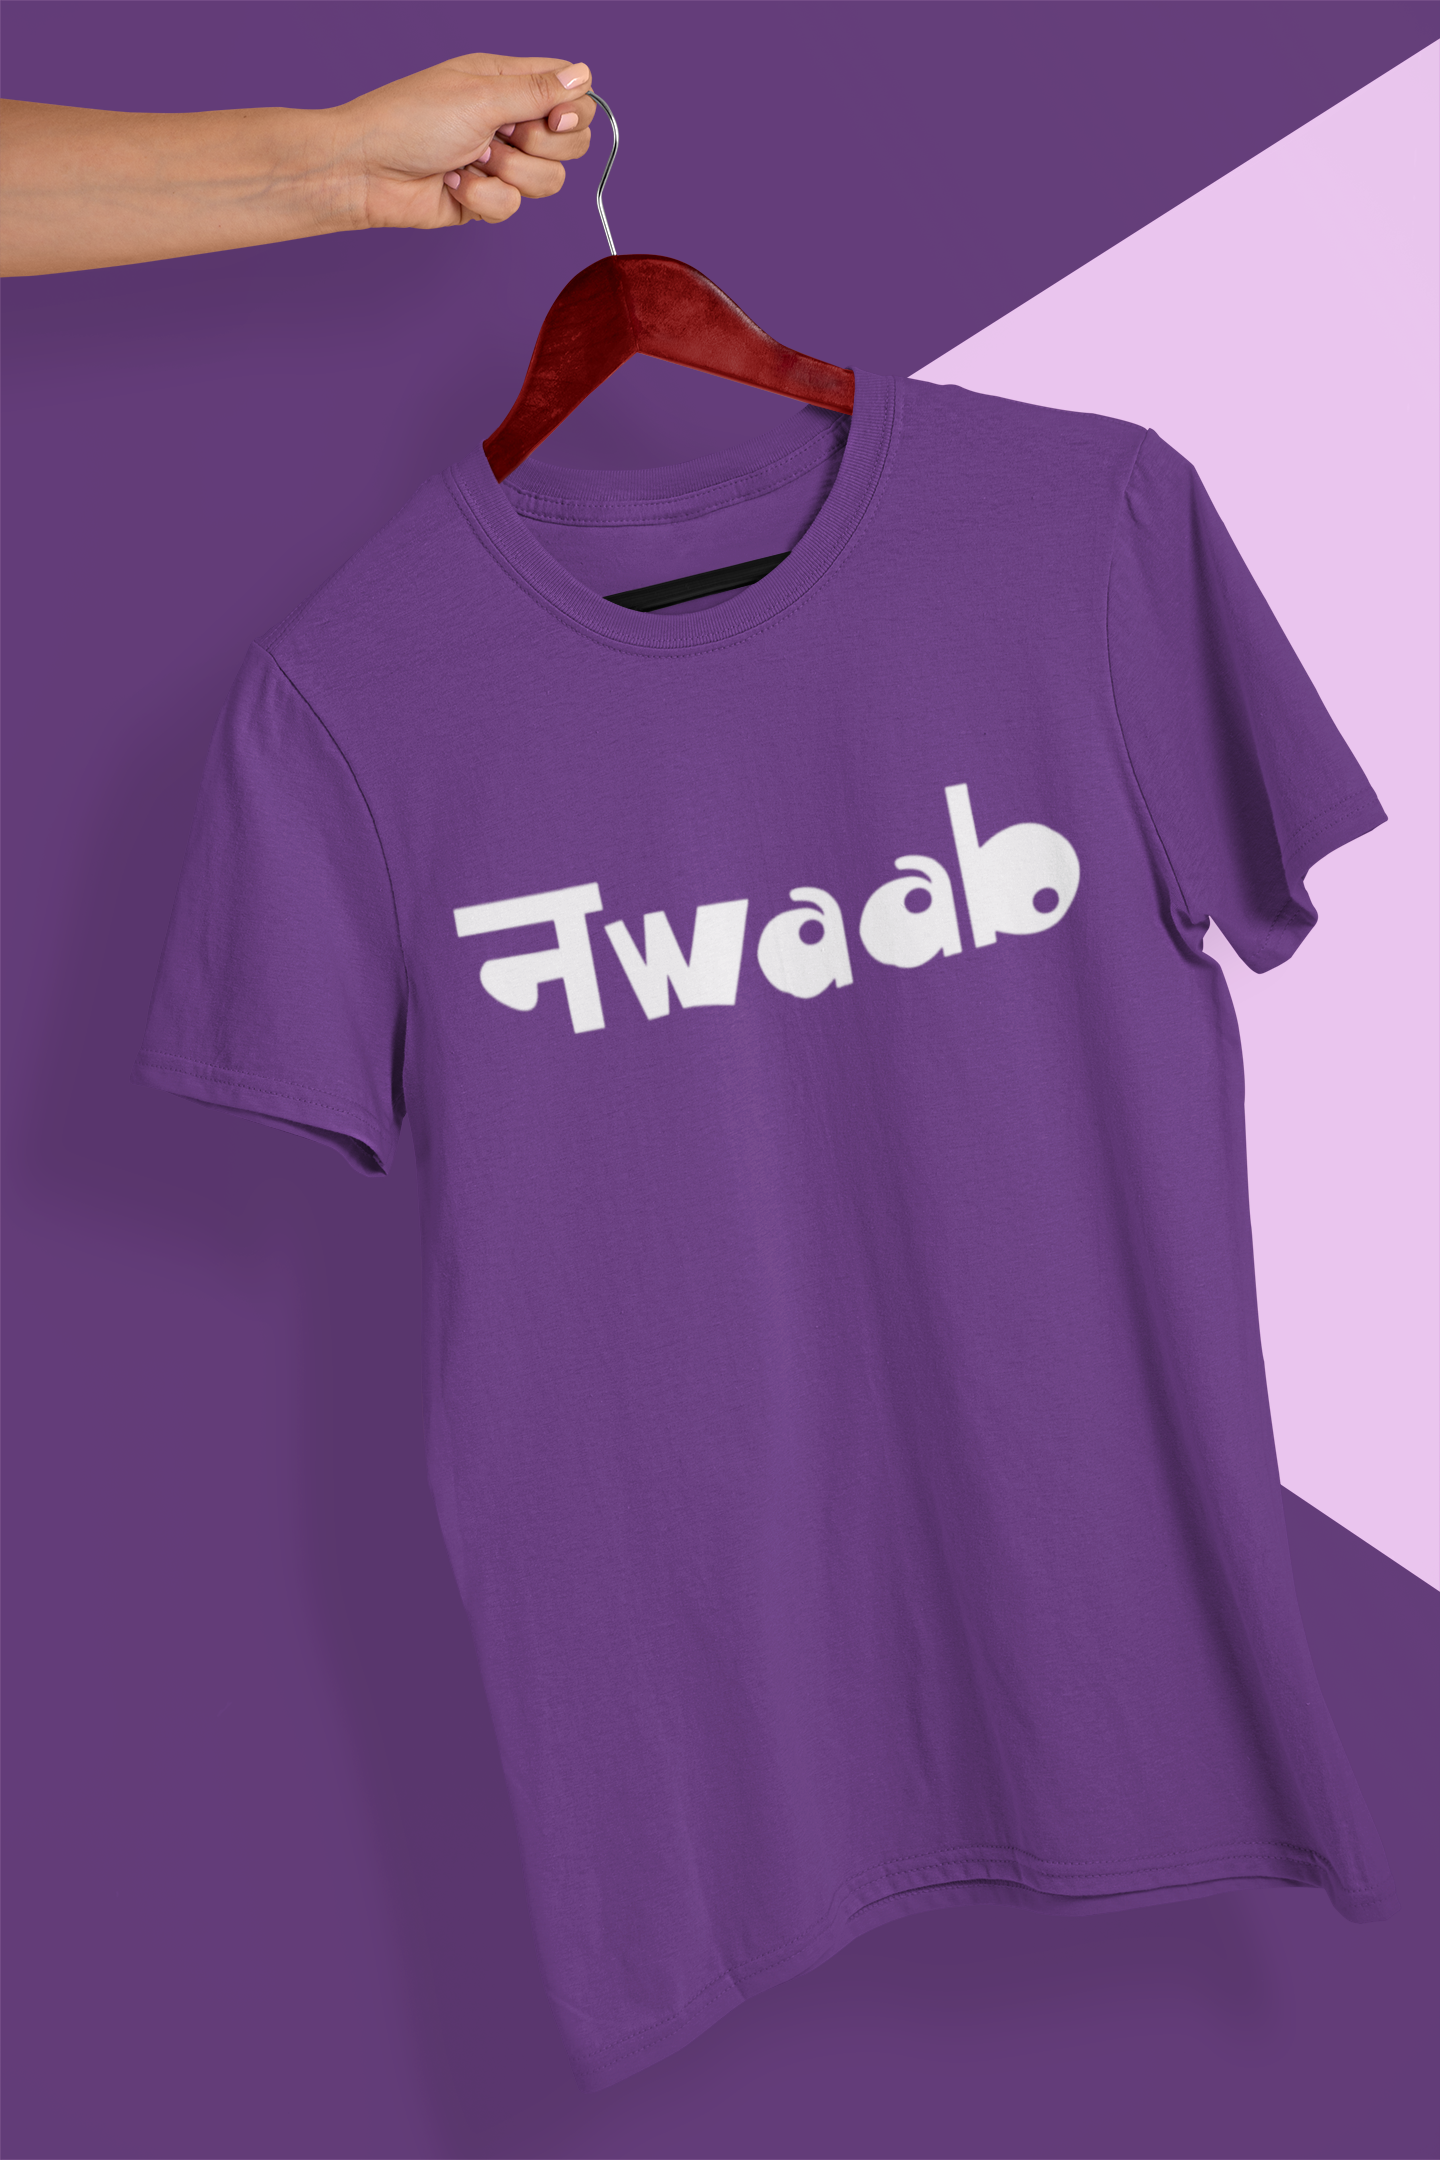 Nwaab Women Half Sleeves T-shirt- FunkyTeesClub